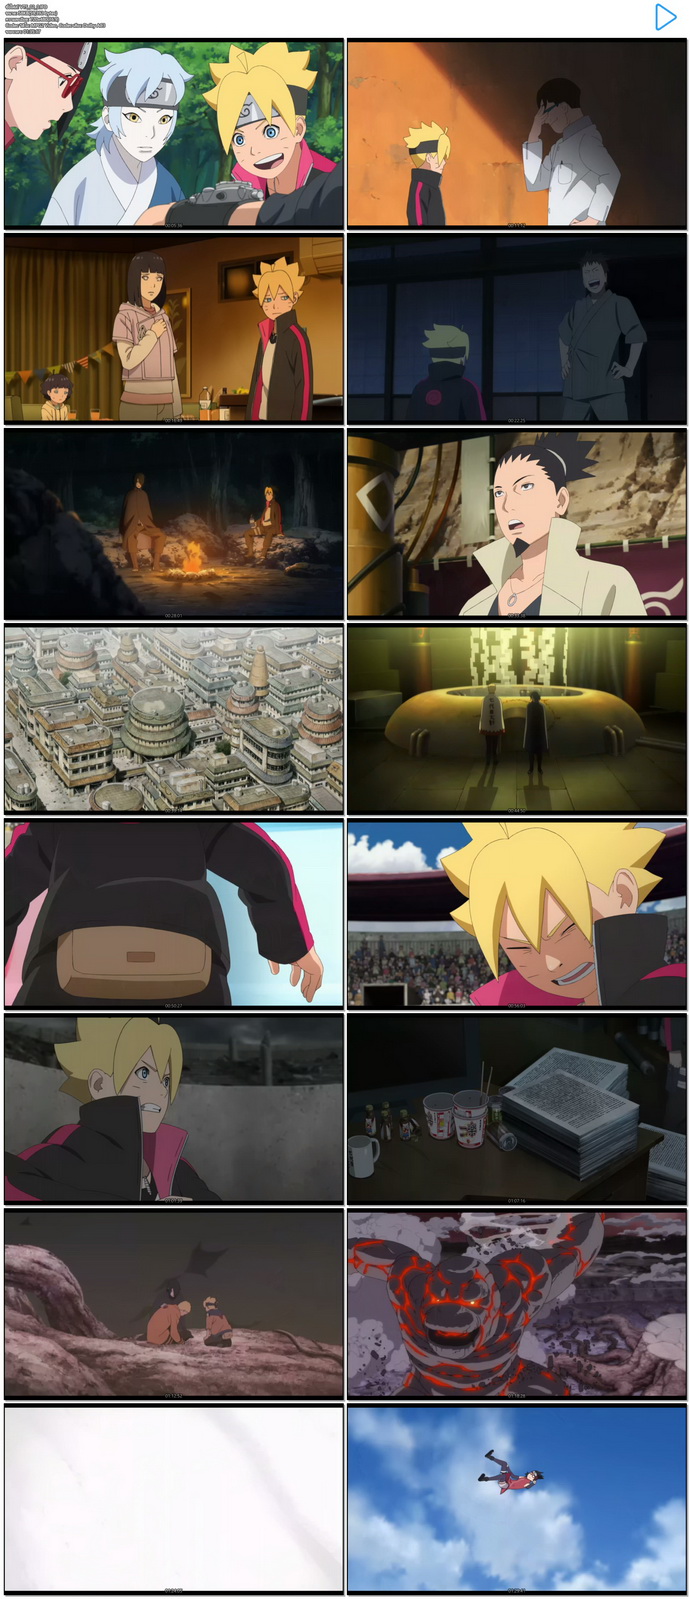 [การ์ตูน] Boruto: Naruto the Movie (2015) - นารูโตะเดอะมูวี่: ตำนานใหม่สายฟ้าสลาตัน [DVD5 Master][เสียง:ไทย 5.1/Jap 5.1][ซับ:ไทย/Eng][.ISO][4.37GB] BT_MovieHdClub_SS